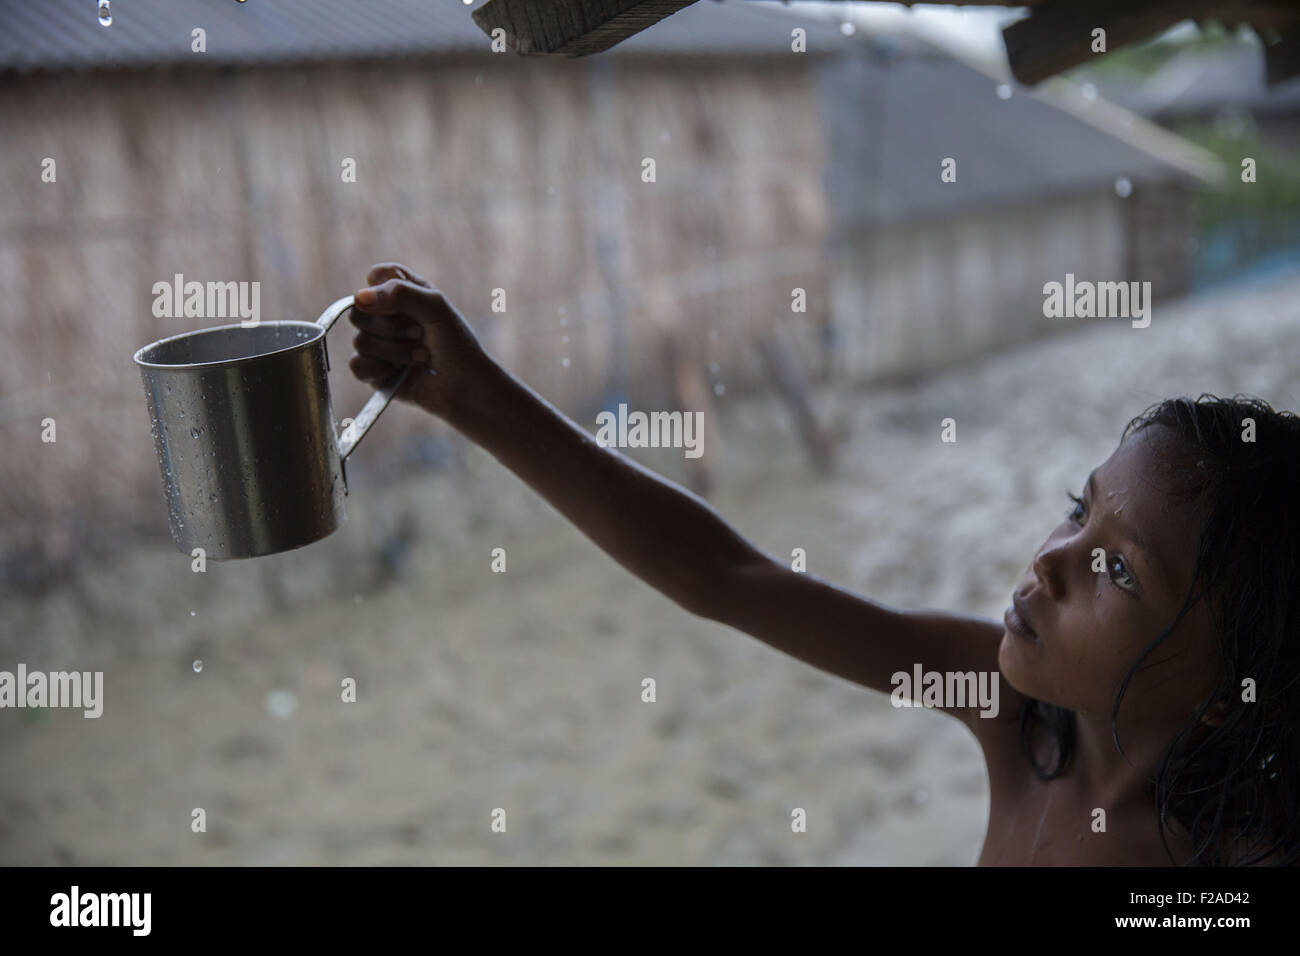 Satkhira, Khulna, Bangladesh. 28. August 2015. Rani ist 9 Jahre altes Mädchen, sammelt Regenwasser für das trinken. Regenwasser ist die Hauptquelle des Trinkwassers der Upazila Dorfbewohner. Ironischerweise gibt es Wasser überall; Sie nur neigen Kochsalzlösung zu. Bangladesch gehört zu den Ländern, die am meisten anfällig für die Auswirkungen des Klimawandels. Die regelmäßigen und schweren Naturgefahren, die Bangladesch bereits leidet '' "tropische Wirbelstürme, Flusserosion, Hochwasser, Erdrutsche und Dürre ''" sind ganz eingestellt, um die Intensität und Häufigkeit als Folge des Klimawandels zu erhöhen. Meeresspiegelanstieg wird zunehmend Stockfoto